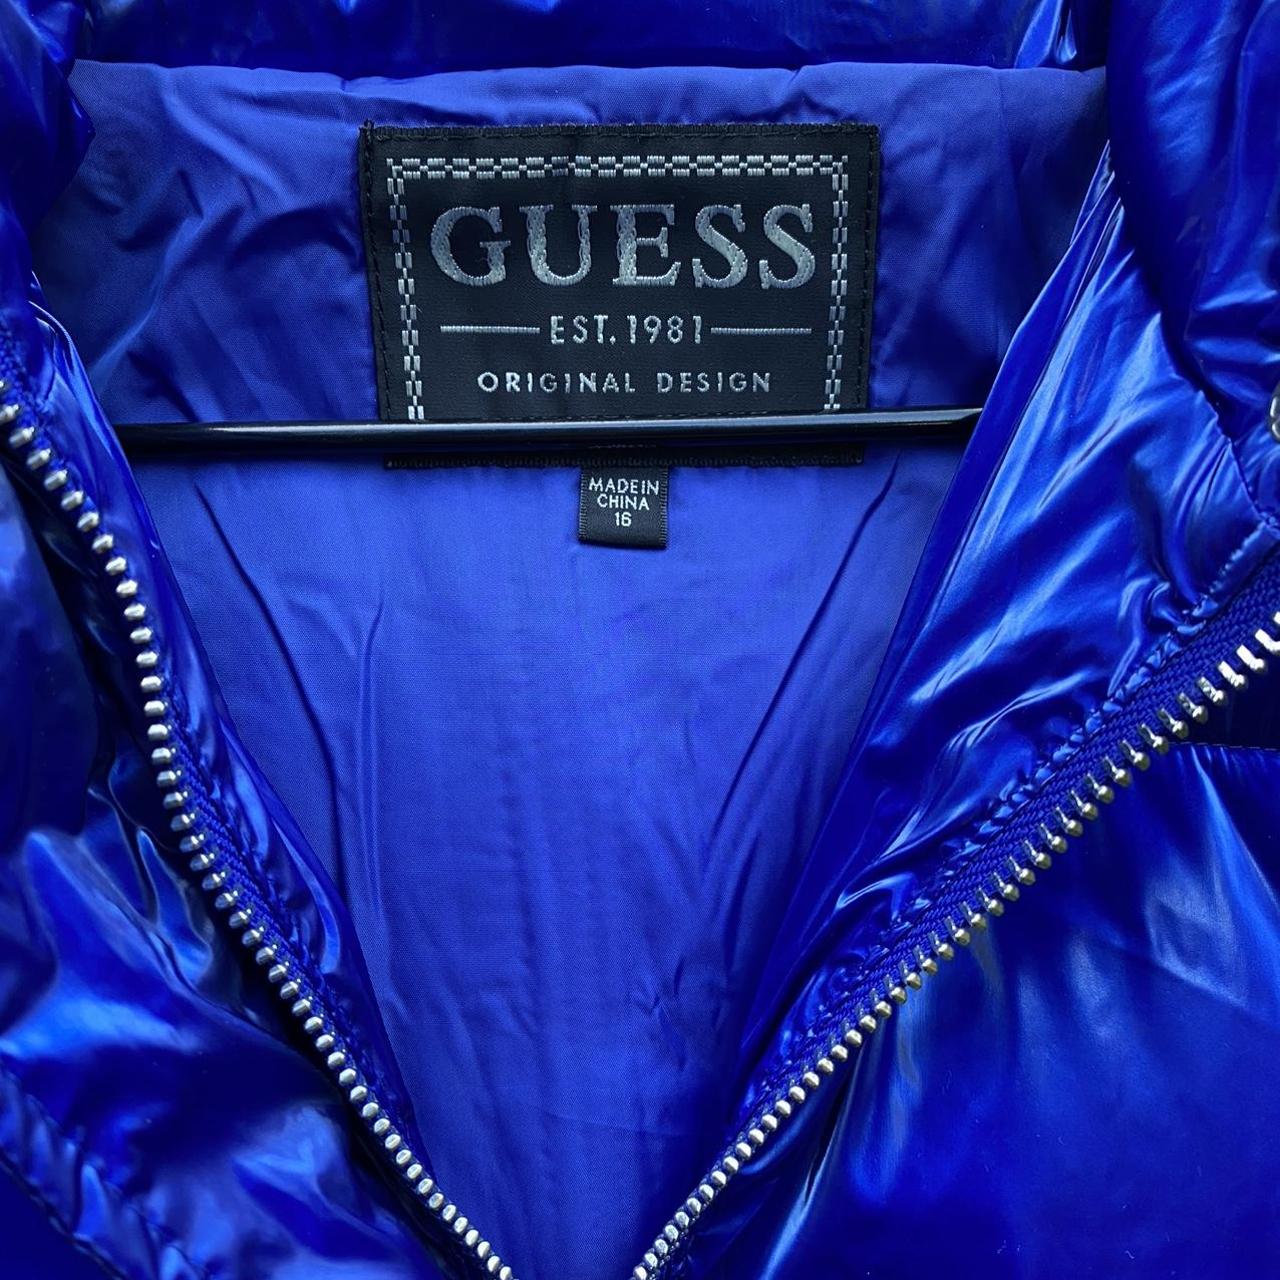 Guess Royal Blue Shiny Puffer Jacket Size Small (UK... - Depop